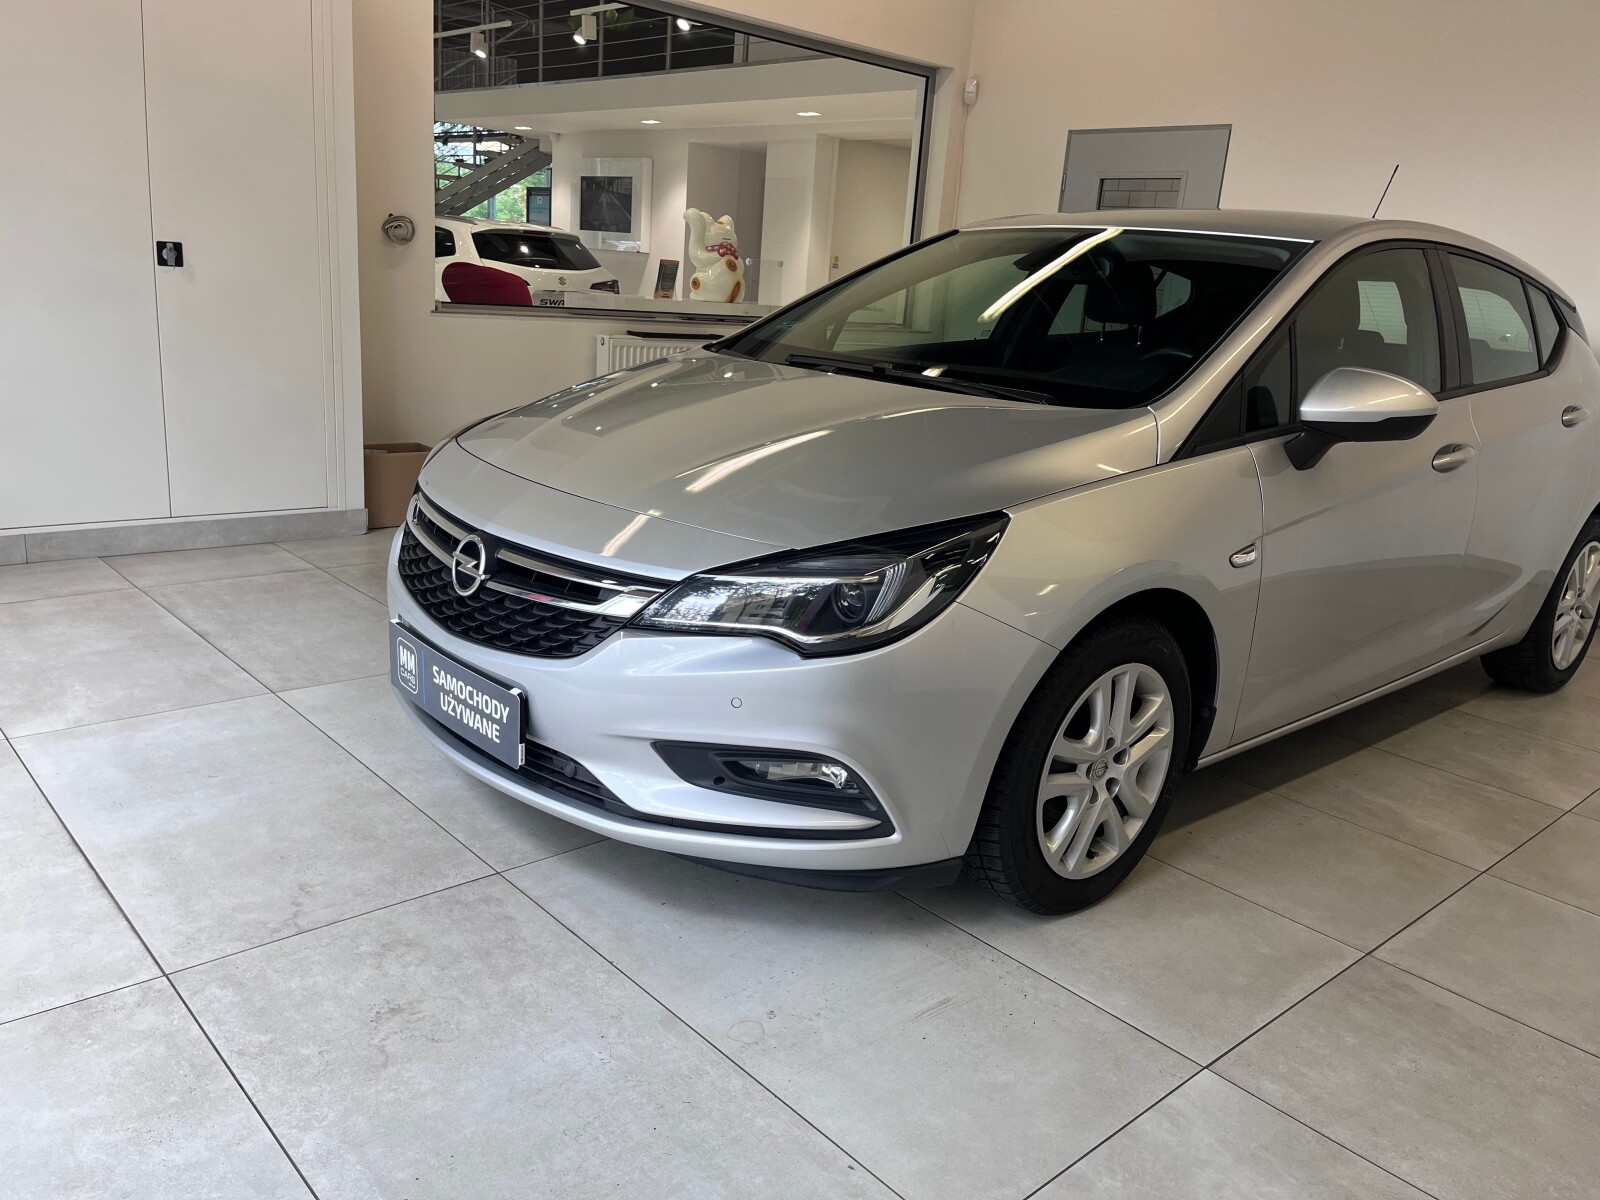 Opel astra V 1.6 2018 salon Polska , pierwszy właściciel